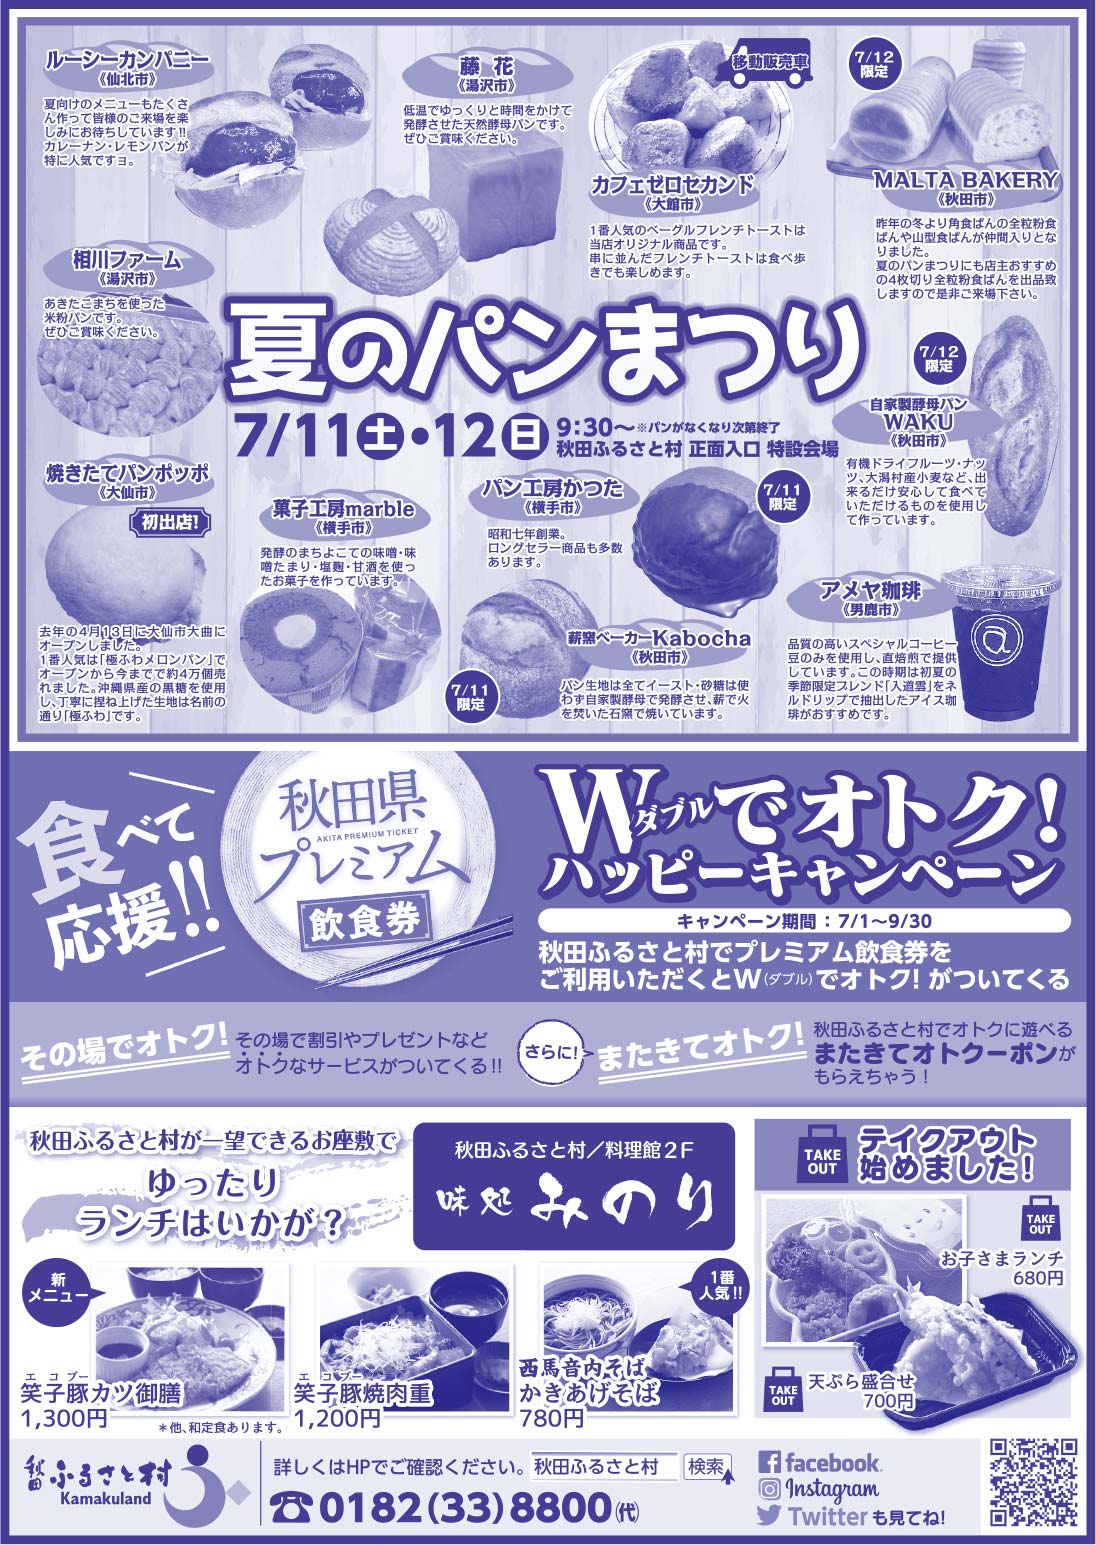 秋田ふるさと村様の2022新春号 横手版広告